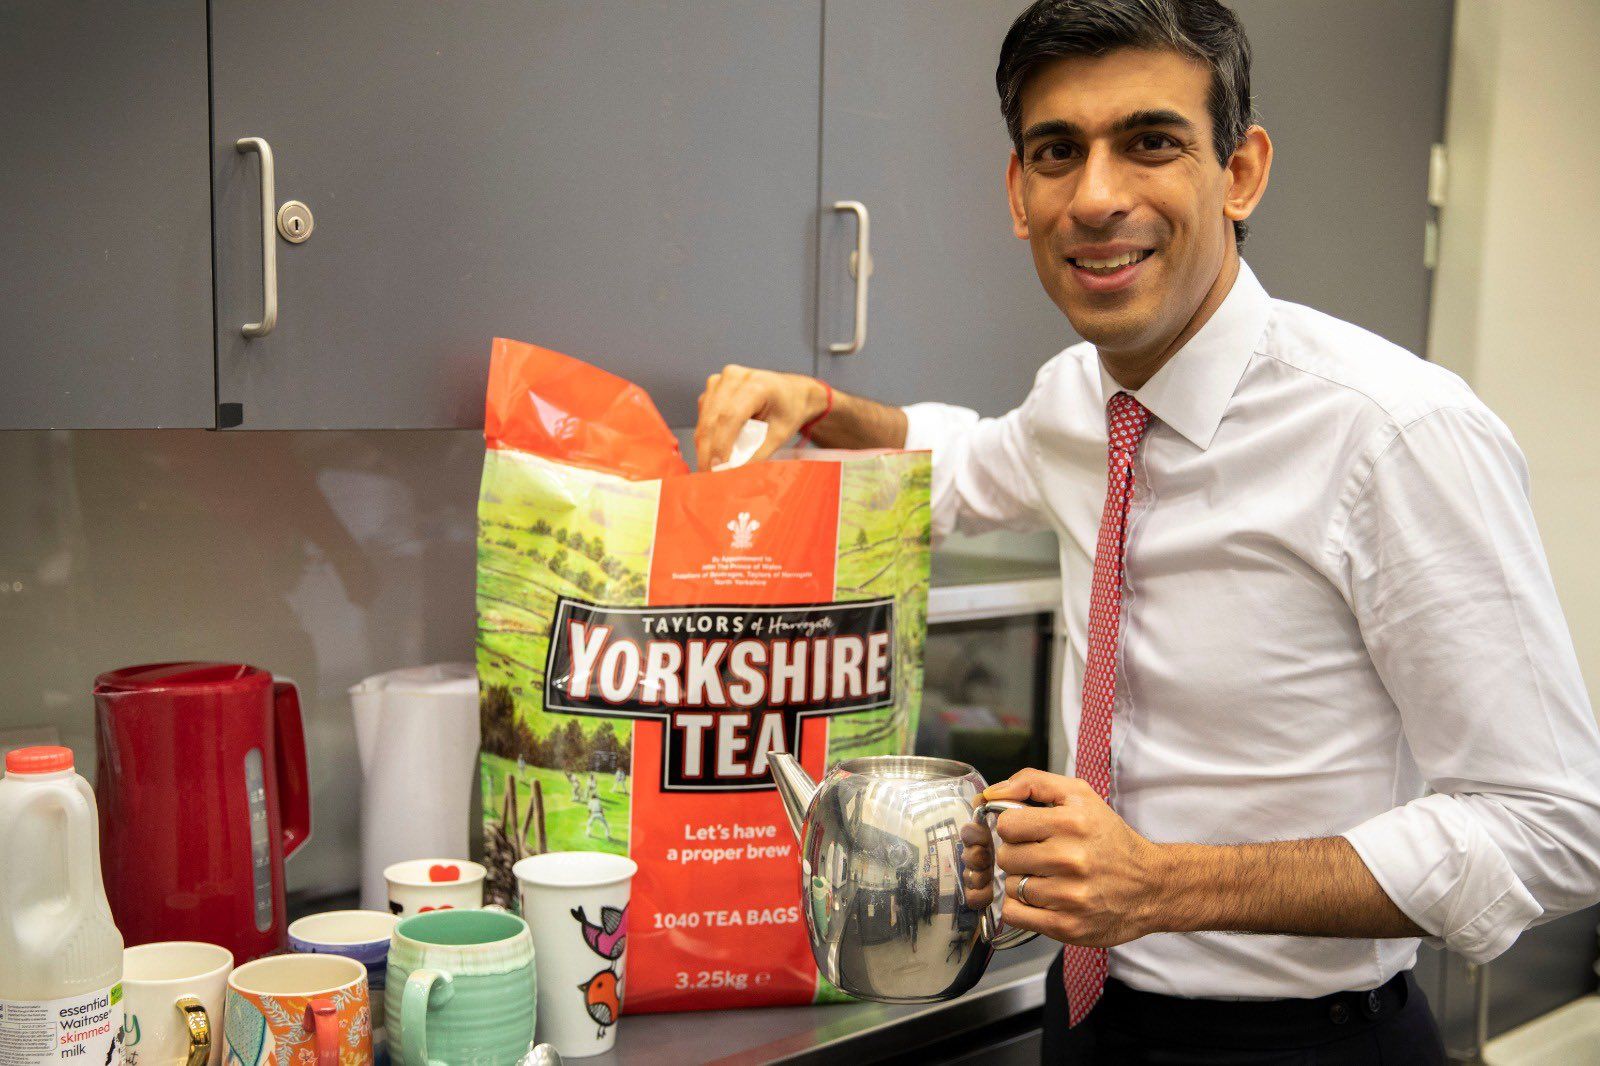 बजट से पहले ब्रिटेन के 'भारतीय' वित्त मंत्री ने बनाई चाय, फोटो ट्विटर पर छाई